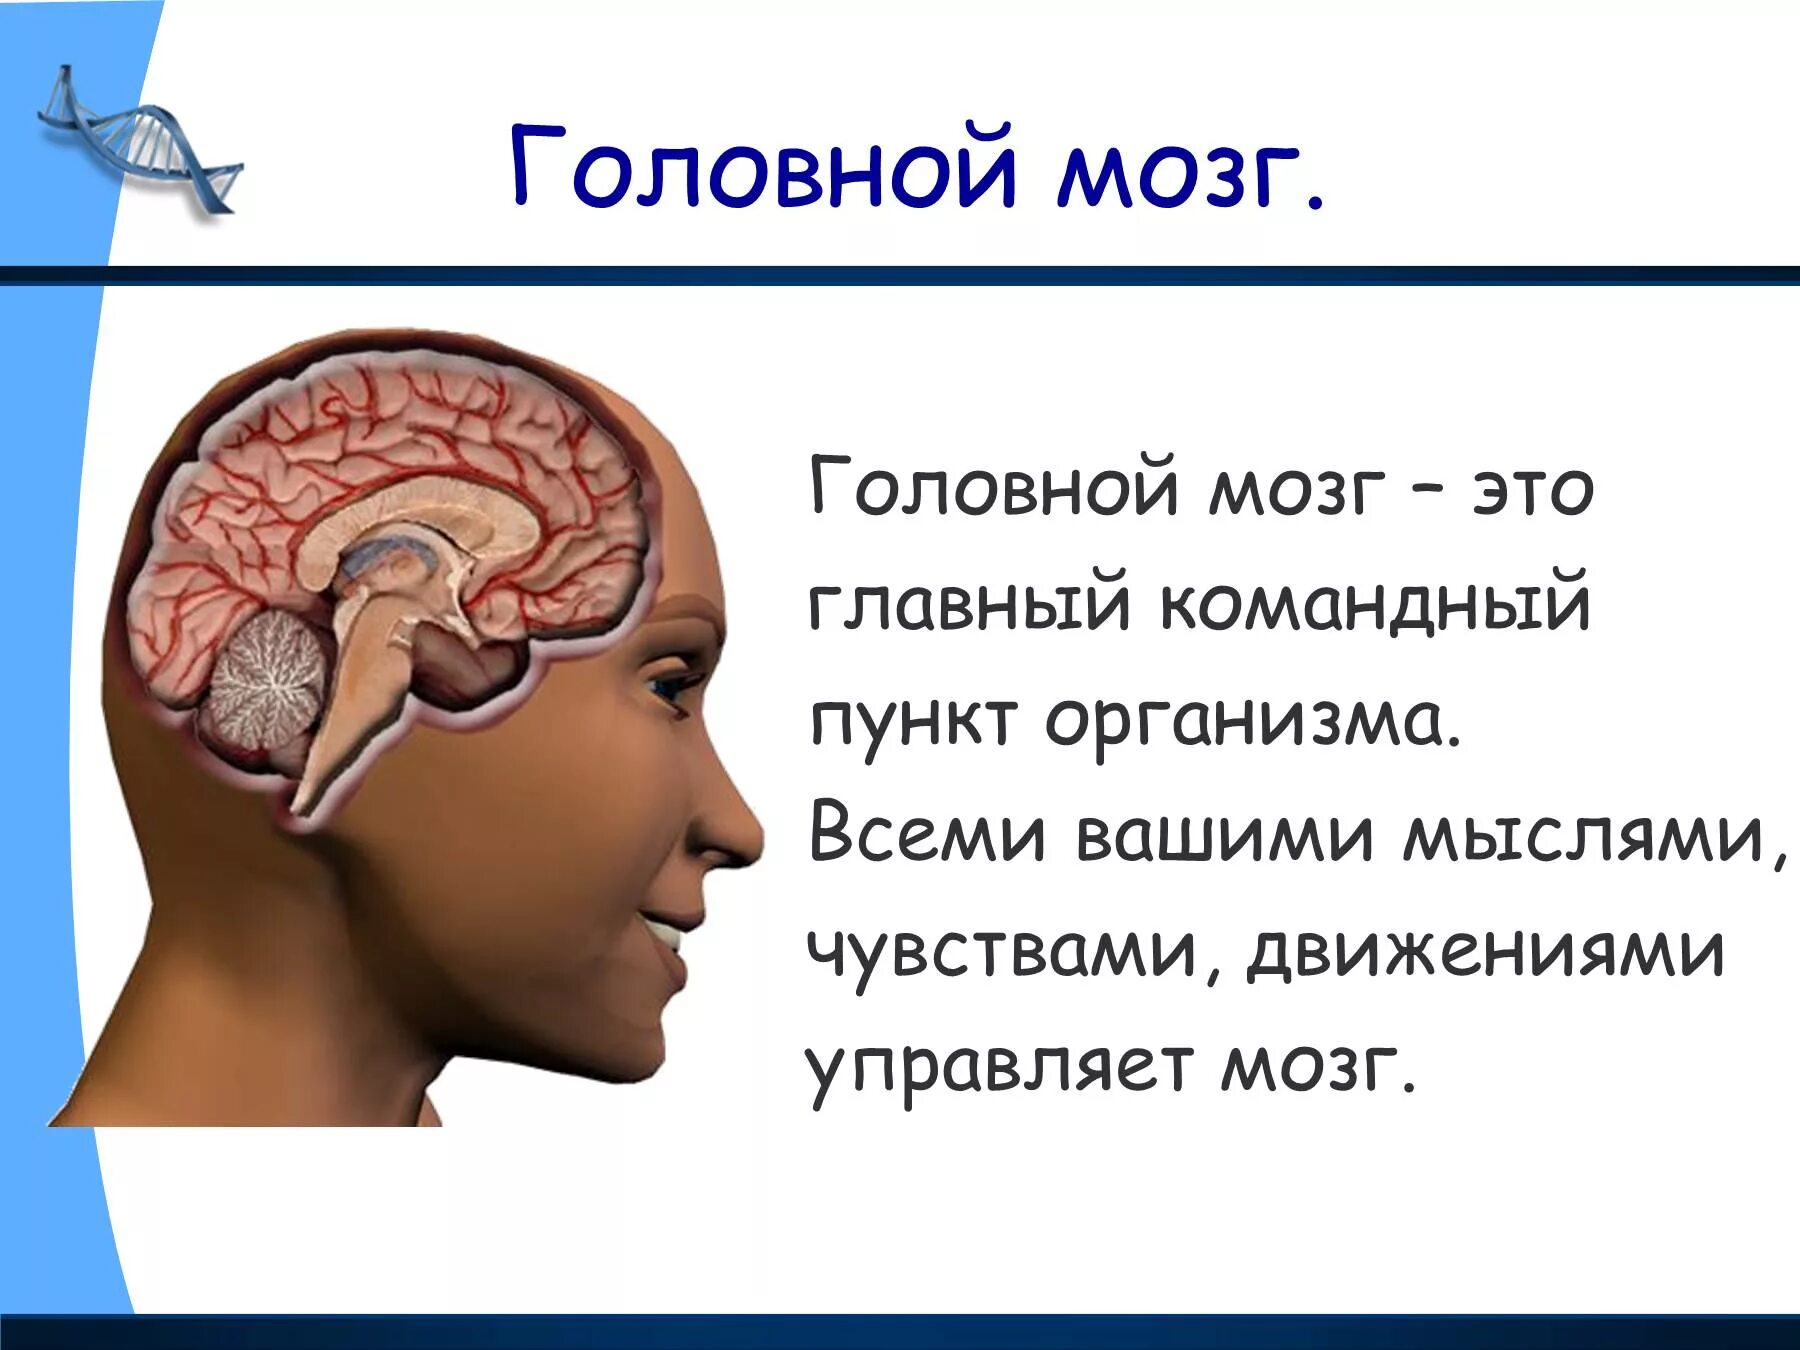 Как работает наш организм презентация. Головной мозг. Строение головного мозга человека. Мозг человека для презентации. Головной мозг презентация.